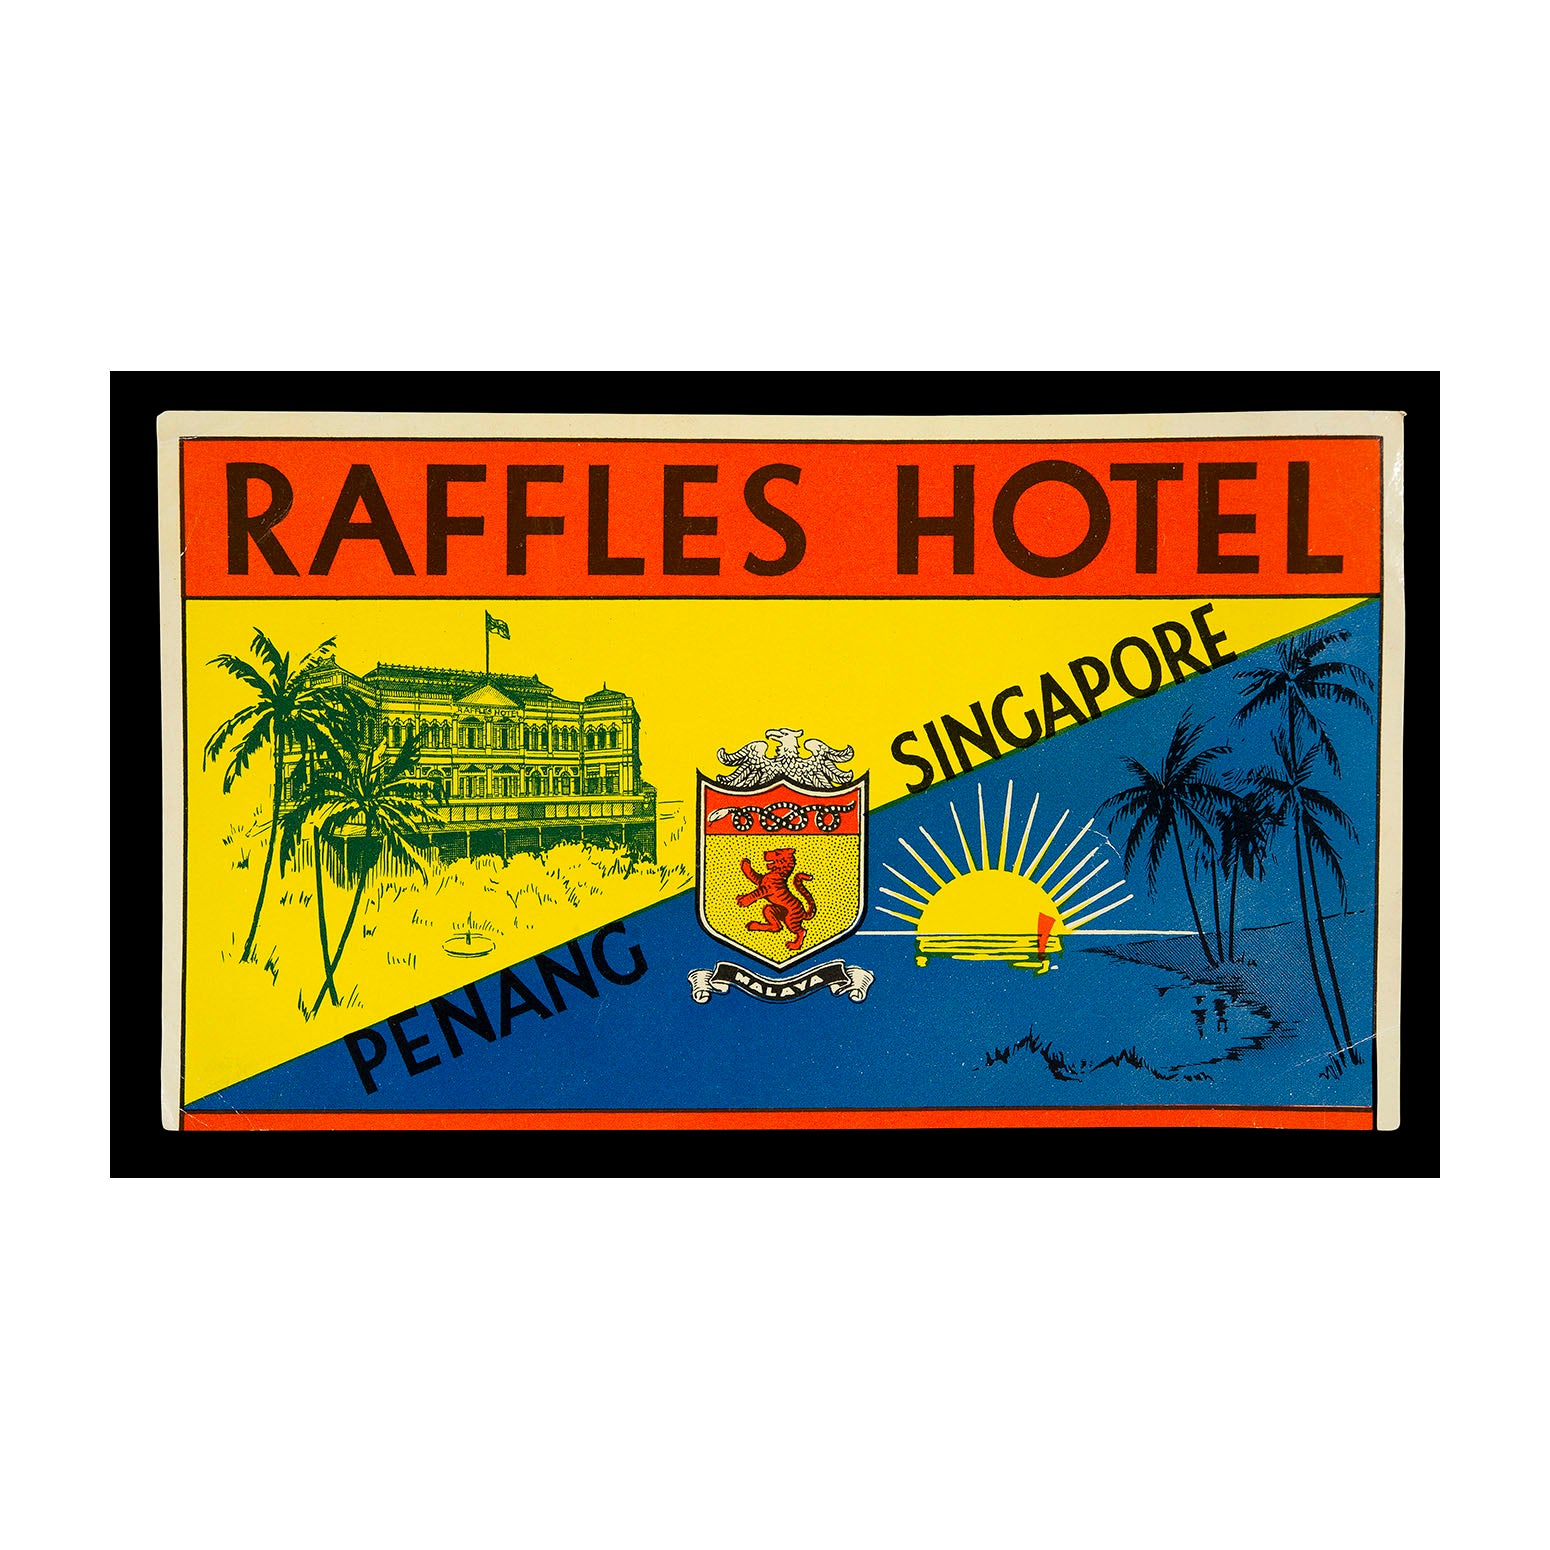 Raffles Hotel (luggage label)